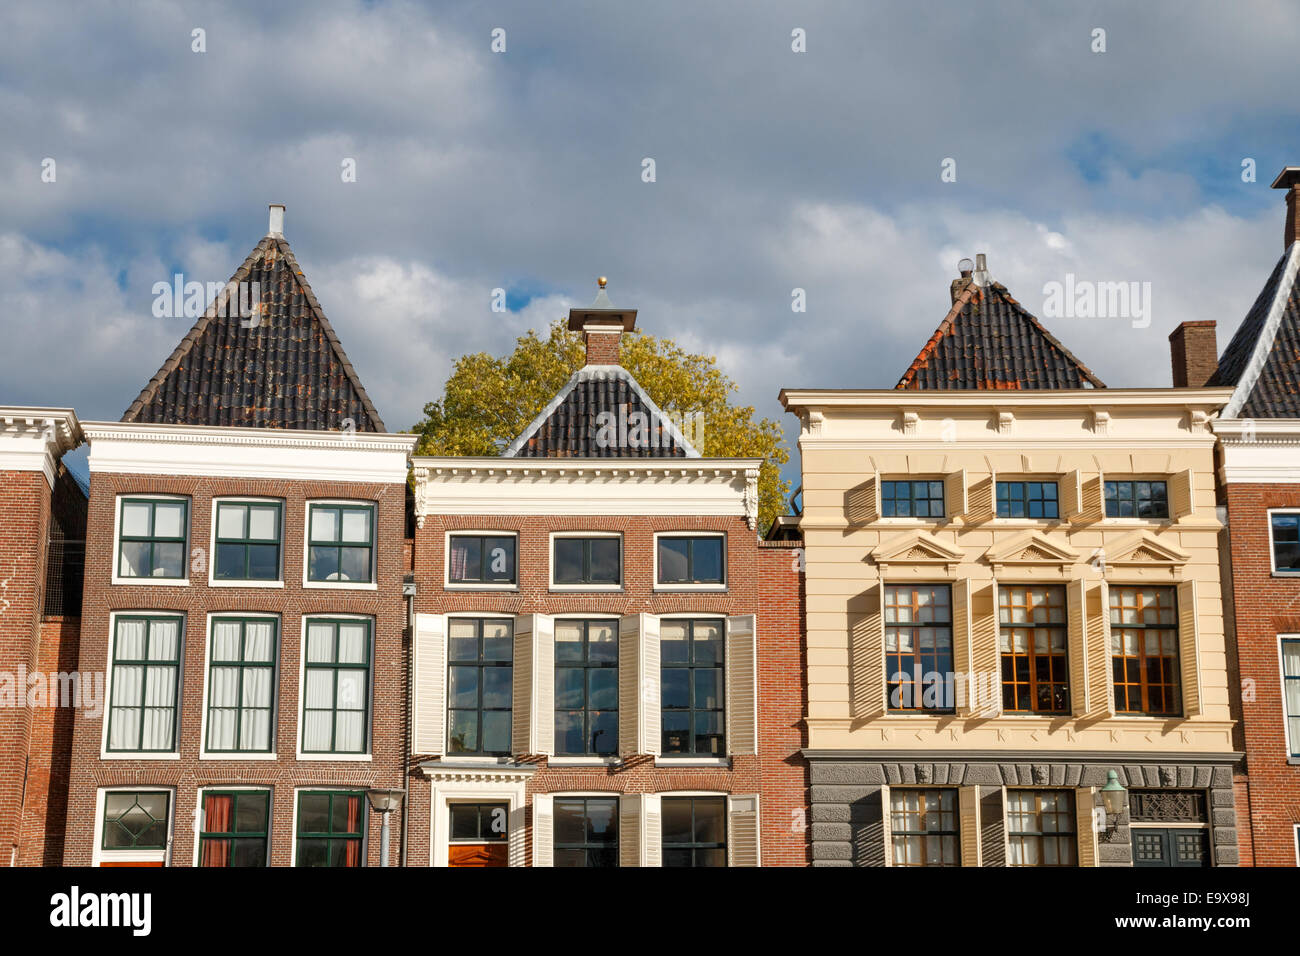 Plusieurs maisons du canal dans le soleil à l 'A' der Hooge, Groningen, Pays-Bas Banque D'Images